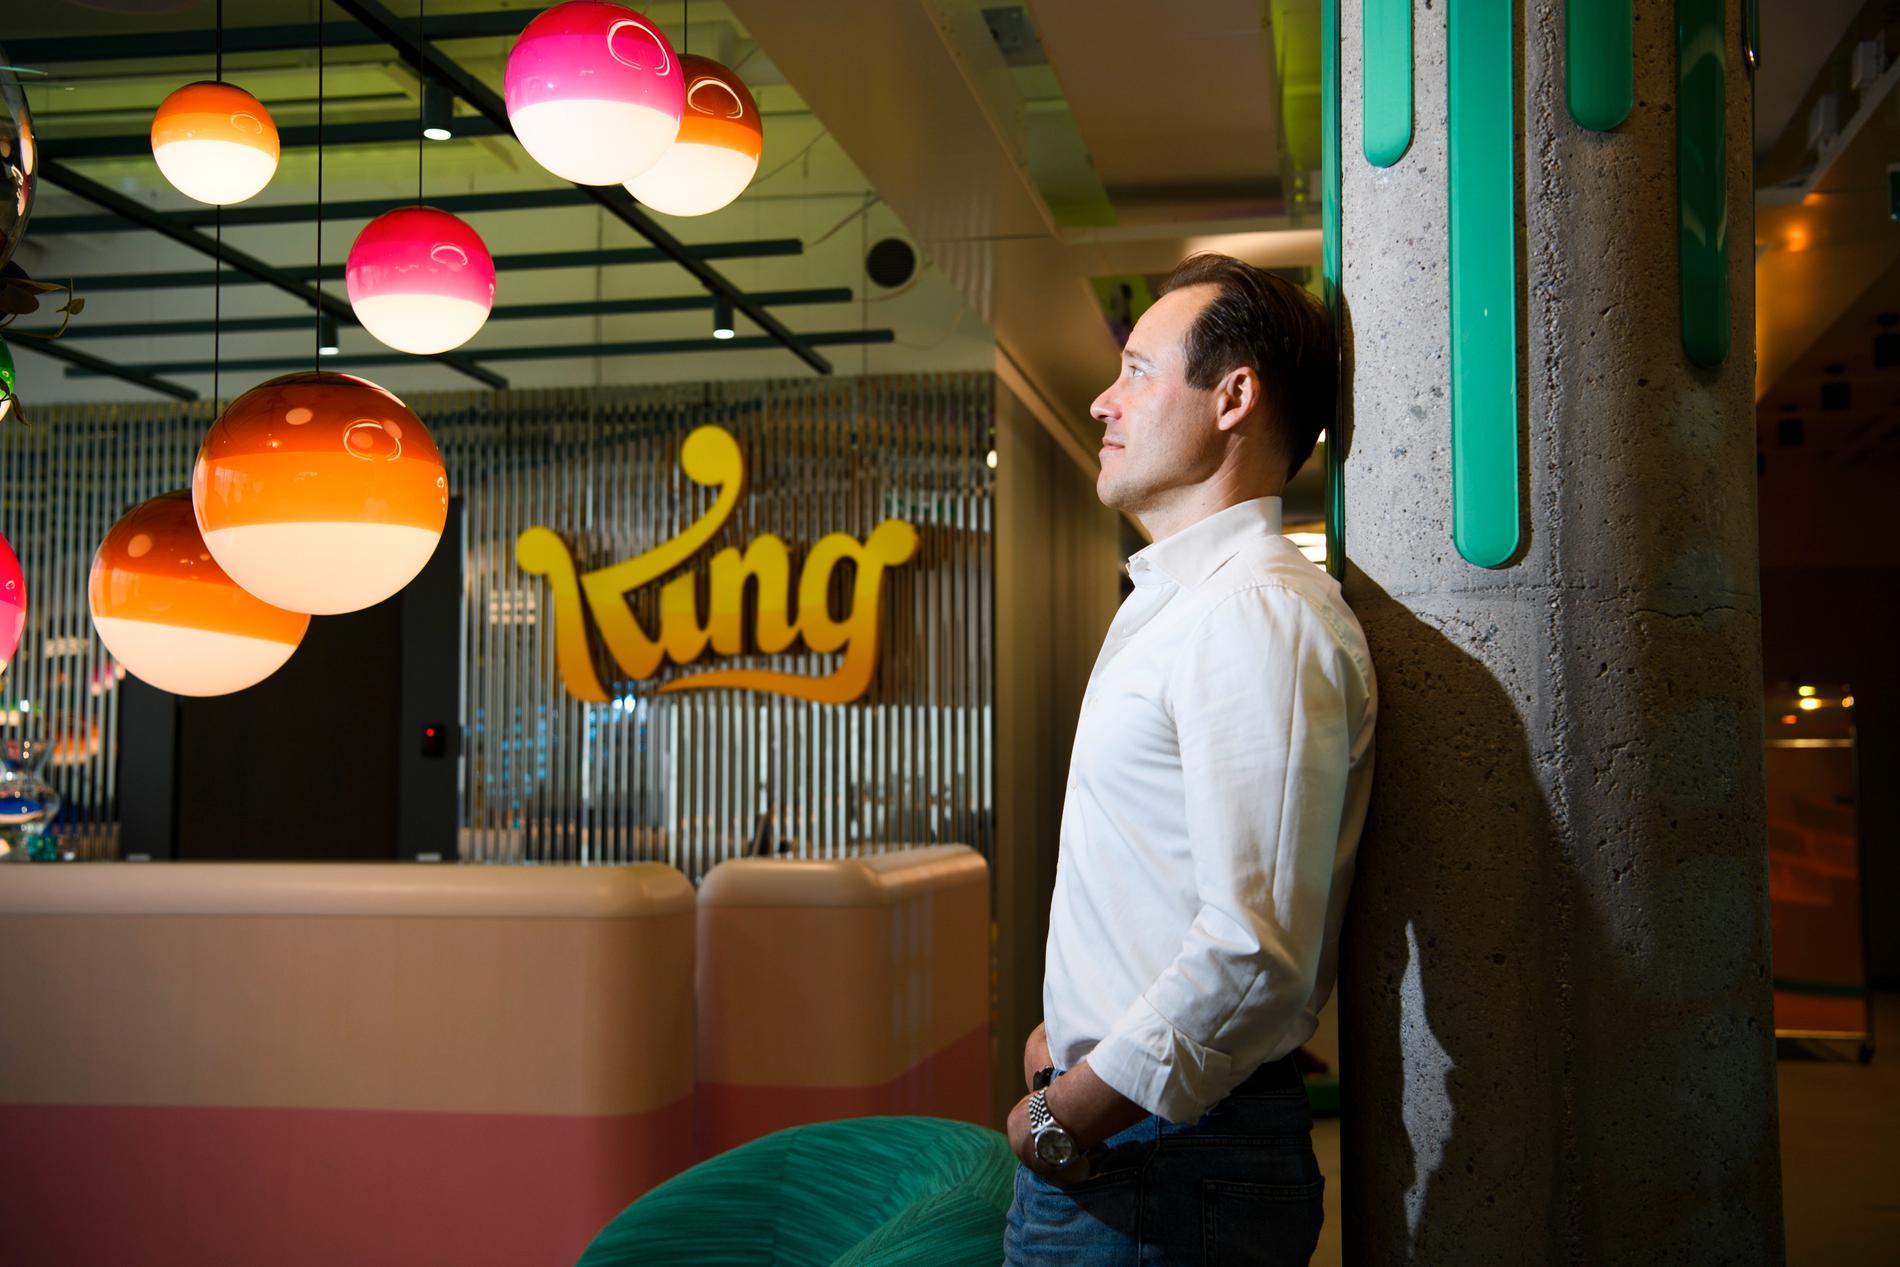 Spelföretaget King har vuxit enormt de senaste åren och flyttar i höst in i nya centrala lokaler i Stockholm. En av grundarna och företagets kreative chef, Sebastian Knutsson, säger att det har varit frustrerande att inte kunna sitta och jobba tillsammans under pandemin.